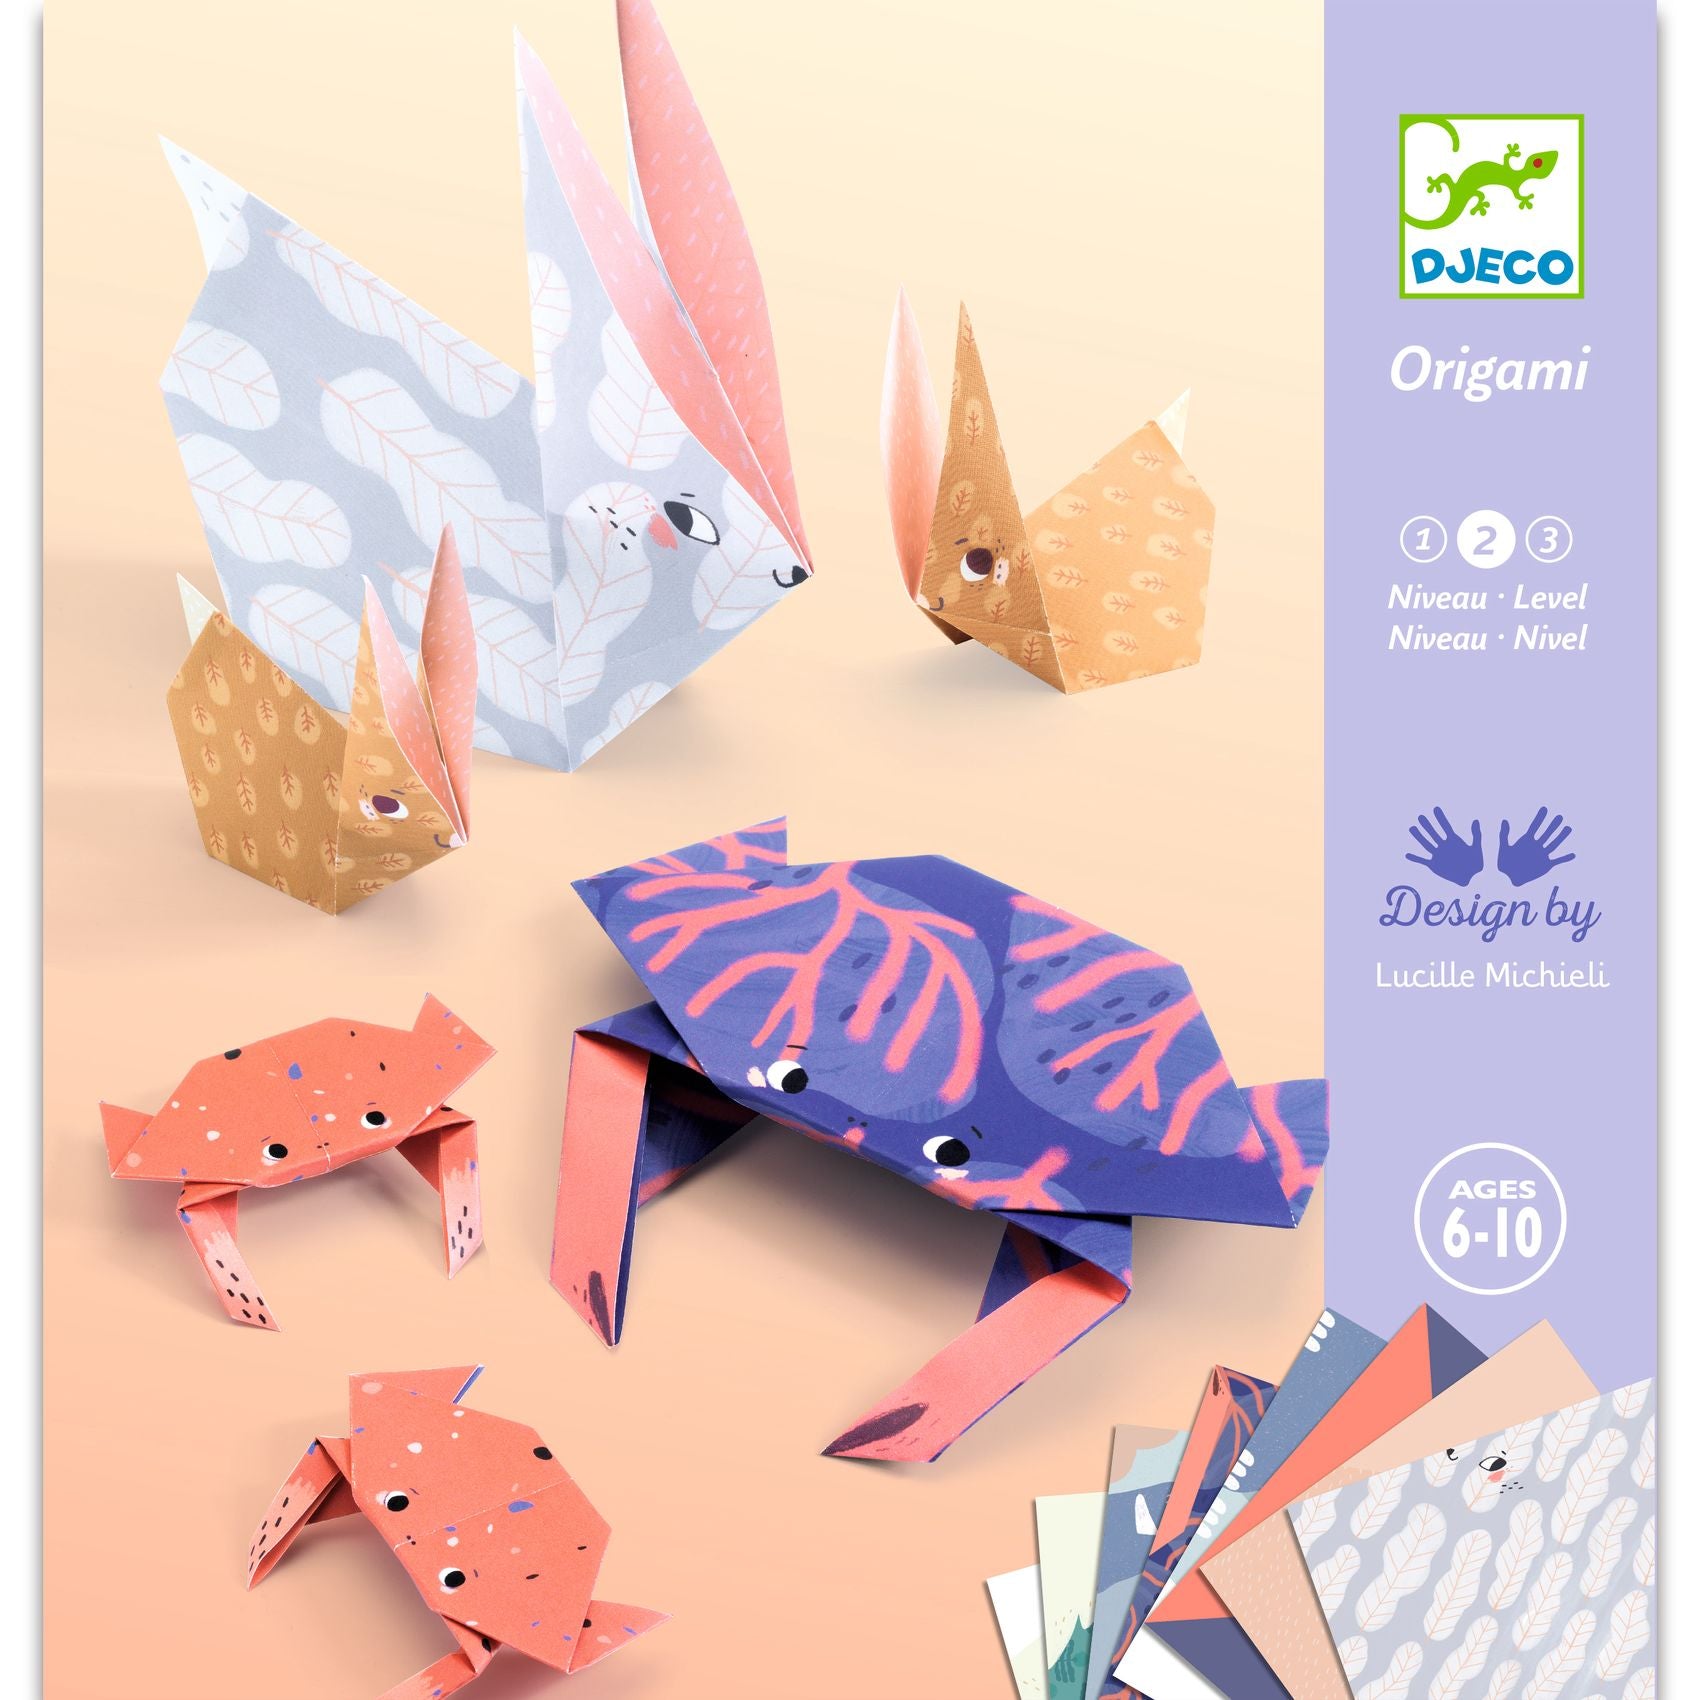 Djeco Djeco Origami - Family - Pearls & Swines